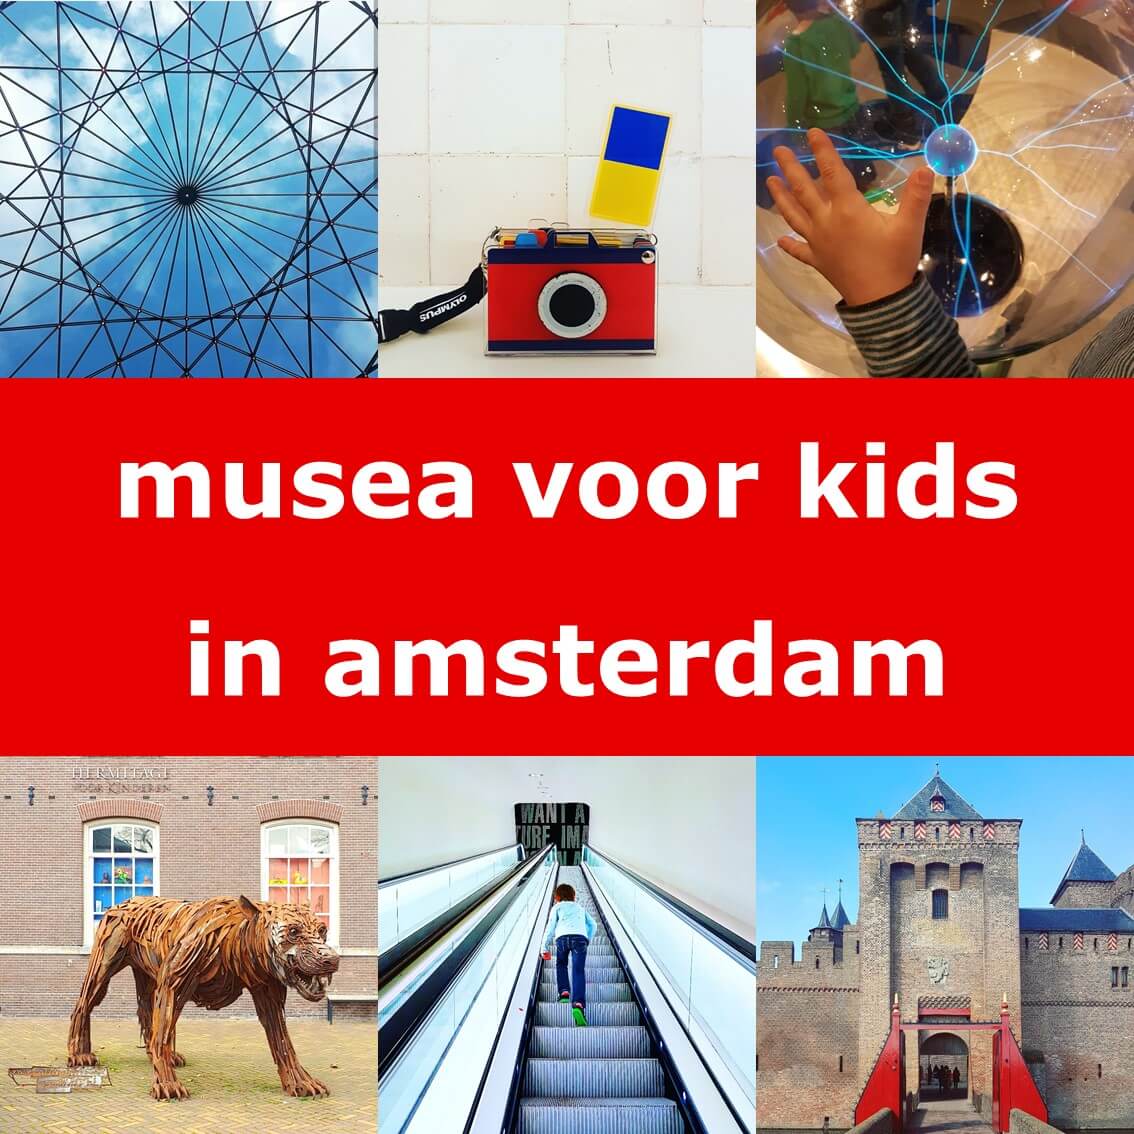 De leukste museum tips in Amsterdam voor kinderen en tieners. In Amsterdam zijn heel veel leuke kindermusea en musea met speciale activiteiten voor kinderen. Hier vind je voor alle kinderen wel een leuk museum in Amsterdam.